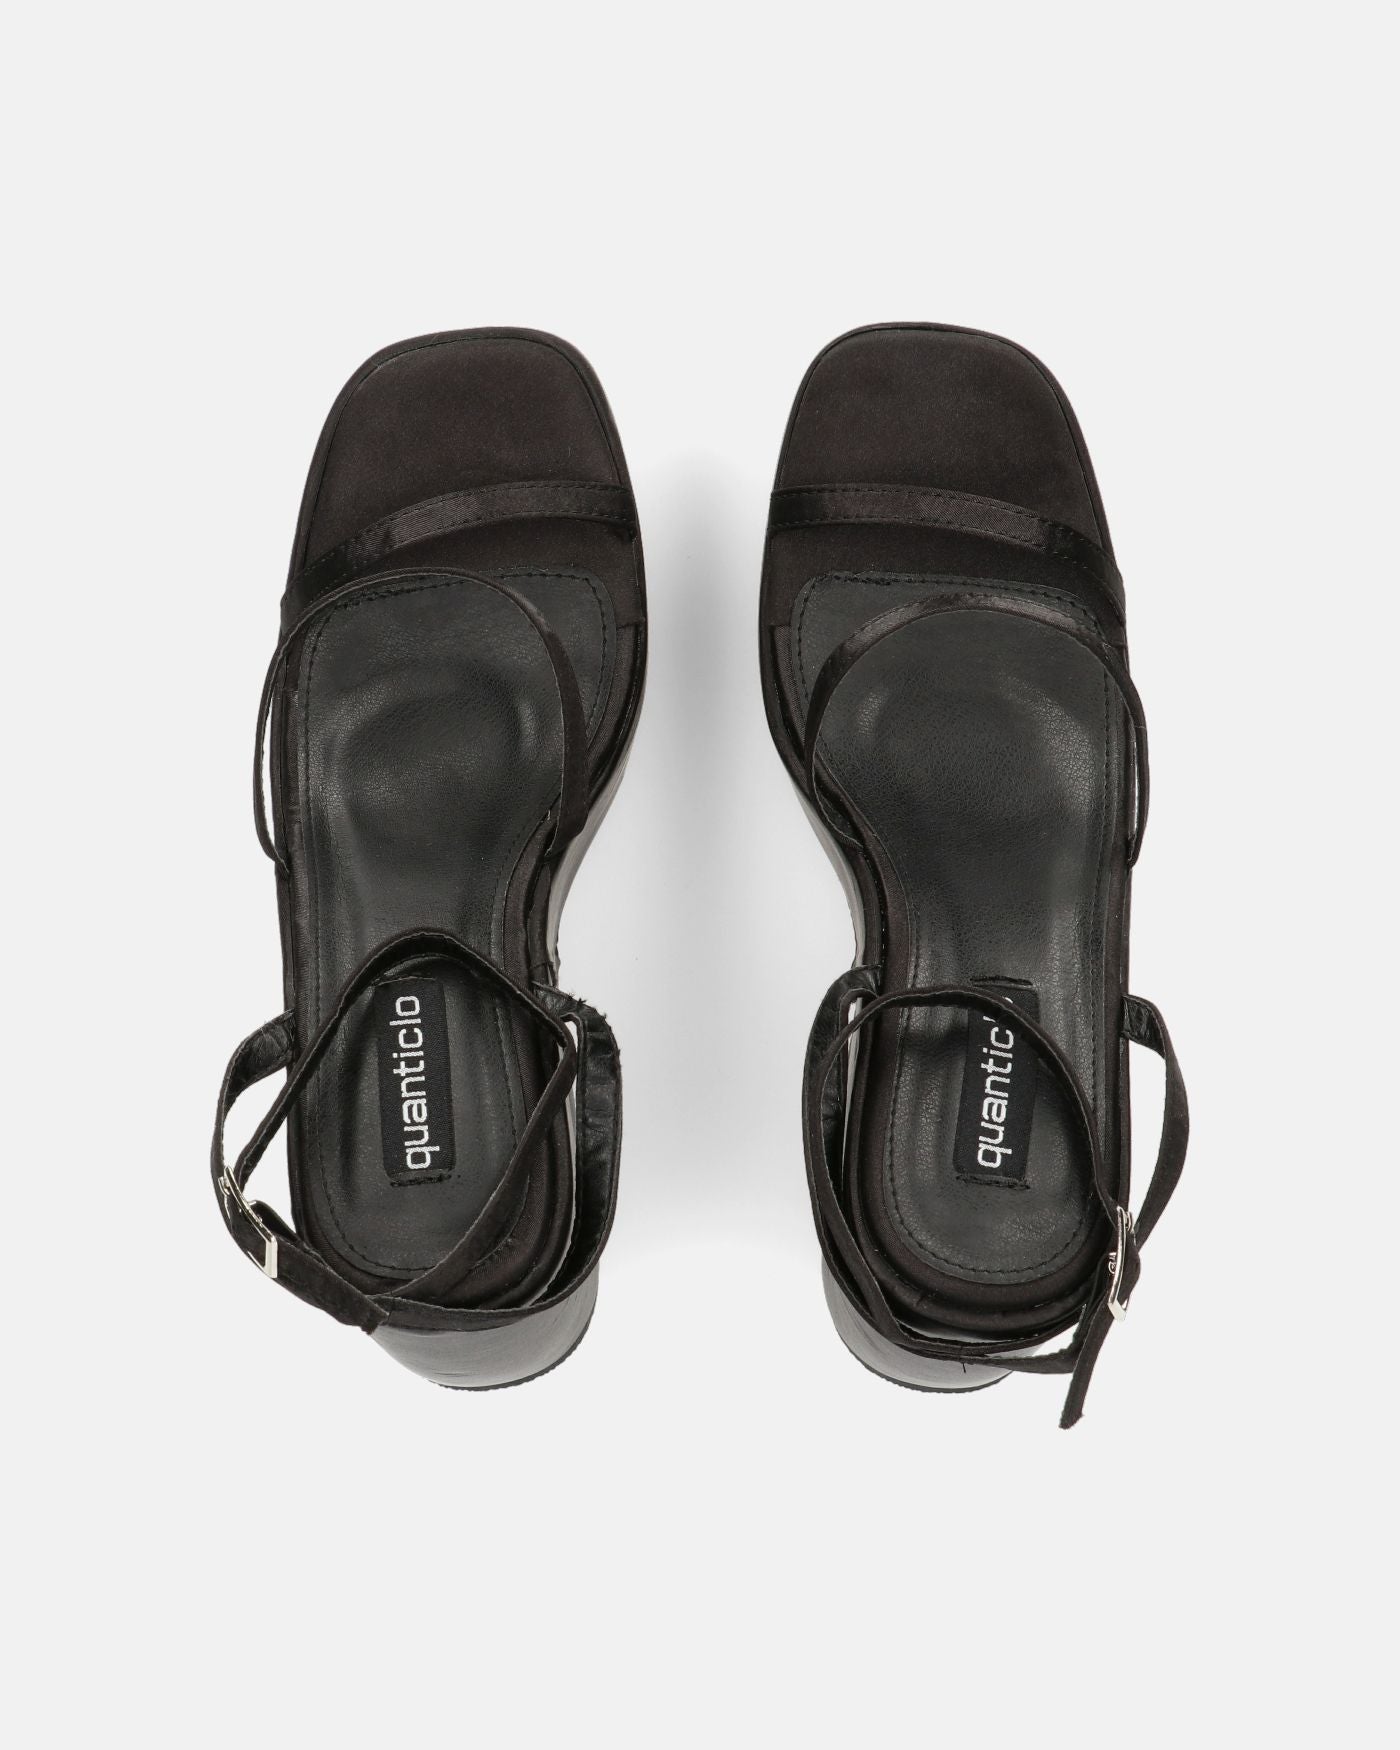 MARIMAR - wedge sandals in black lycra